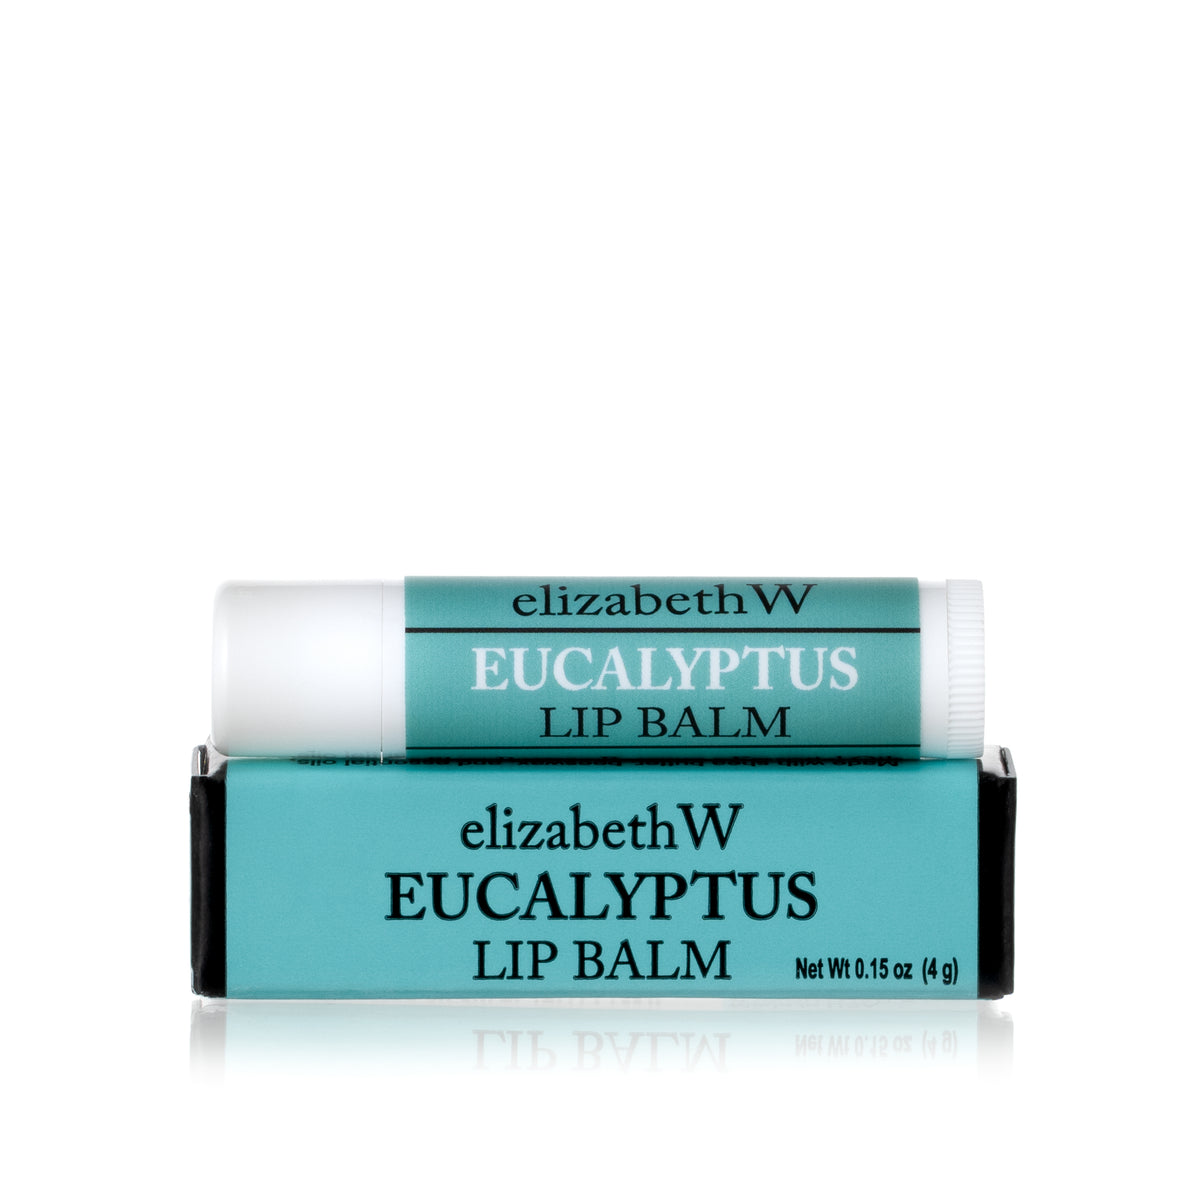 Eucalyptus Lip Balm